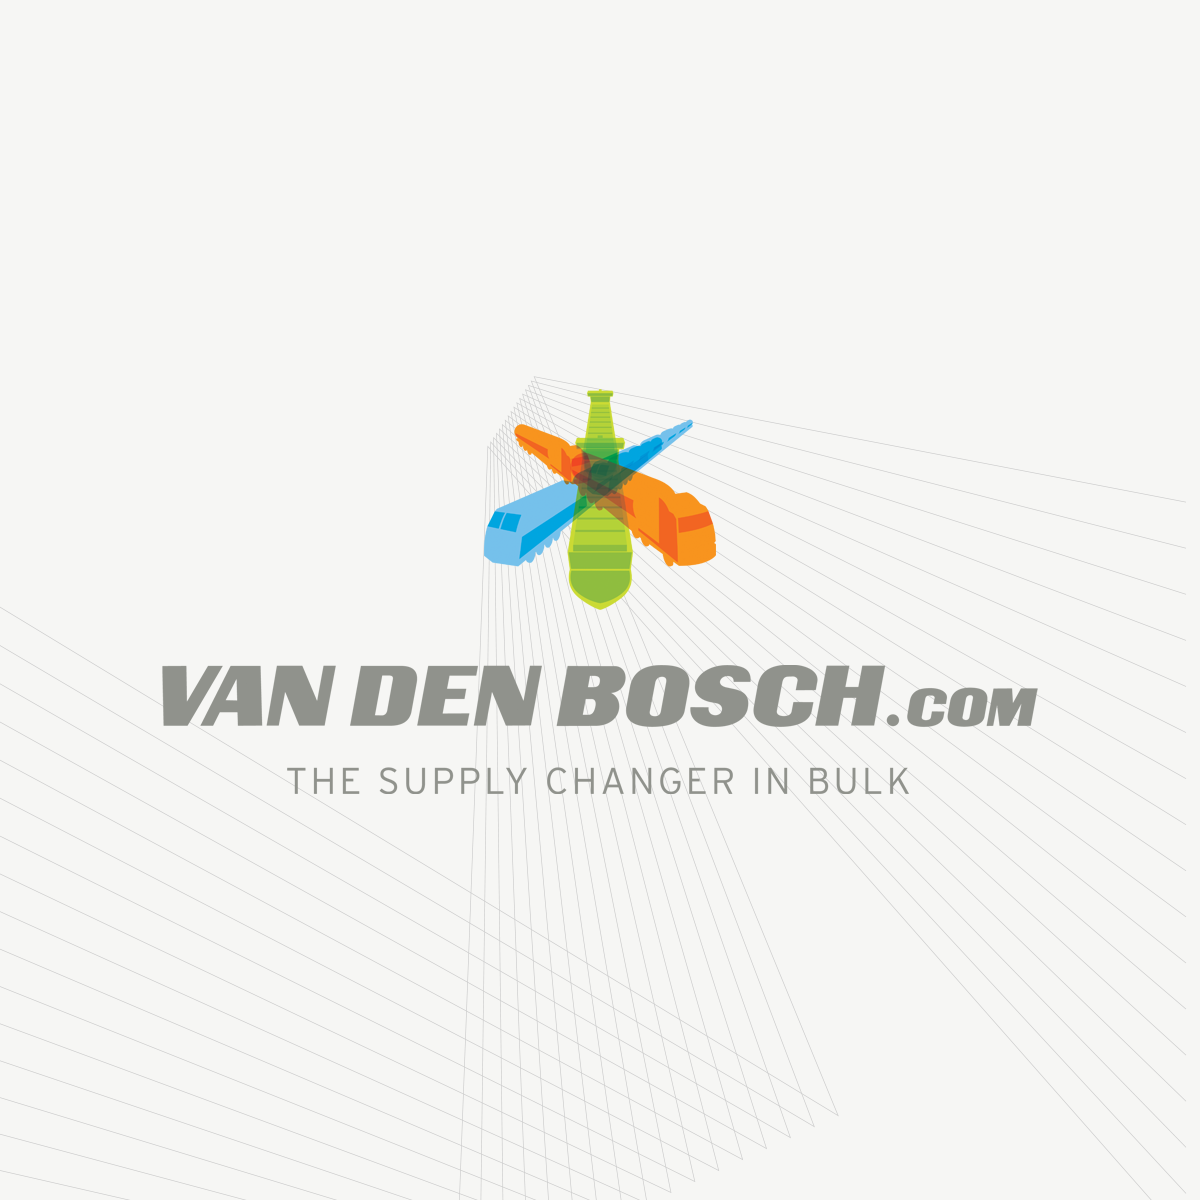 A Different Perspective On Bulk - Van Den Bosch